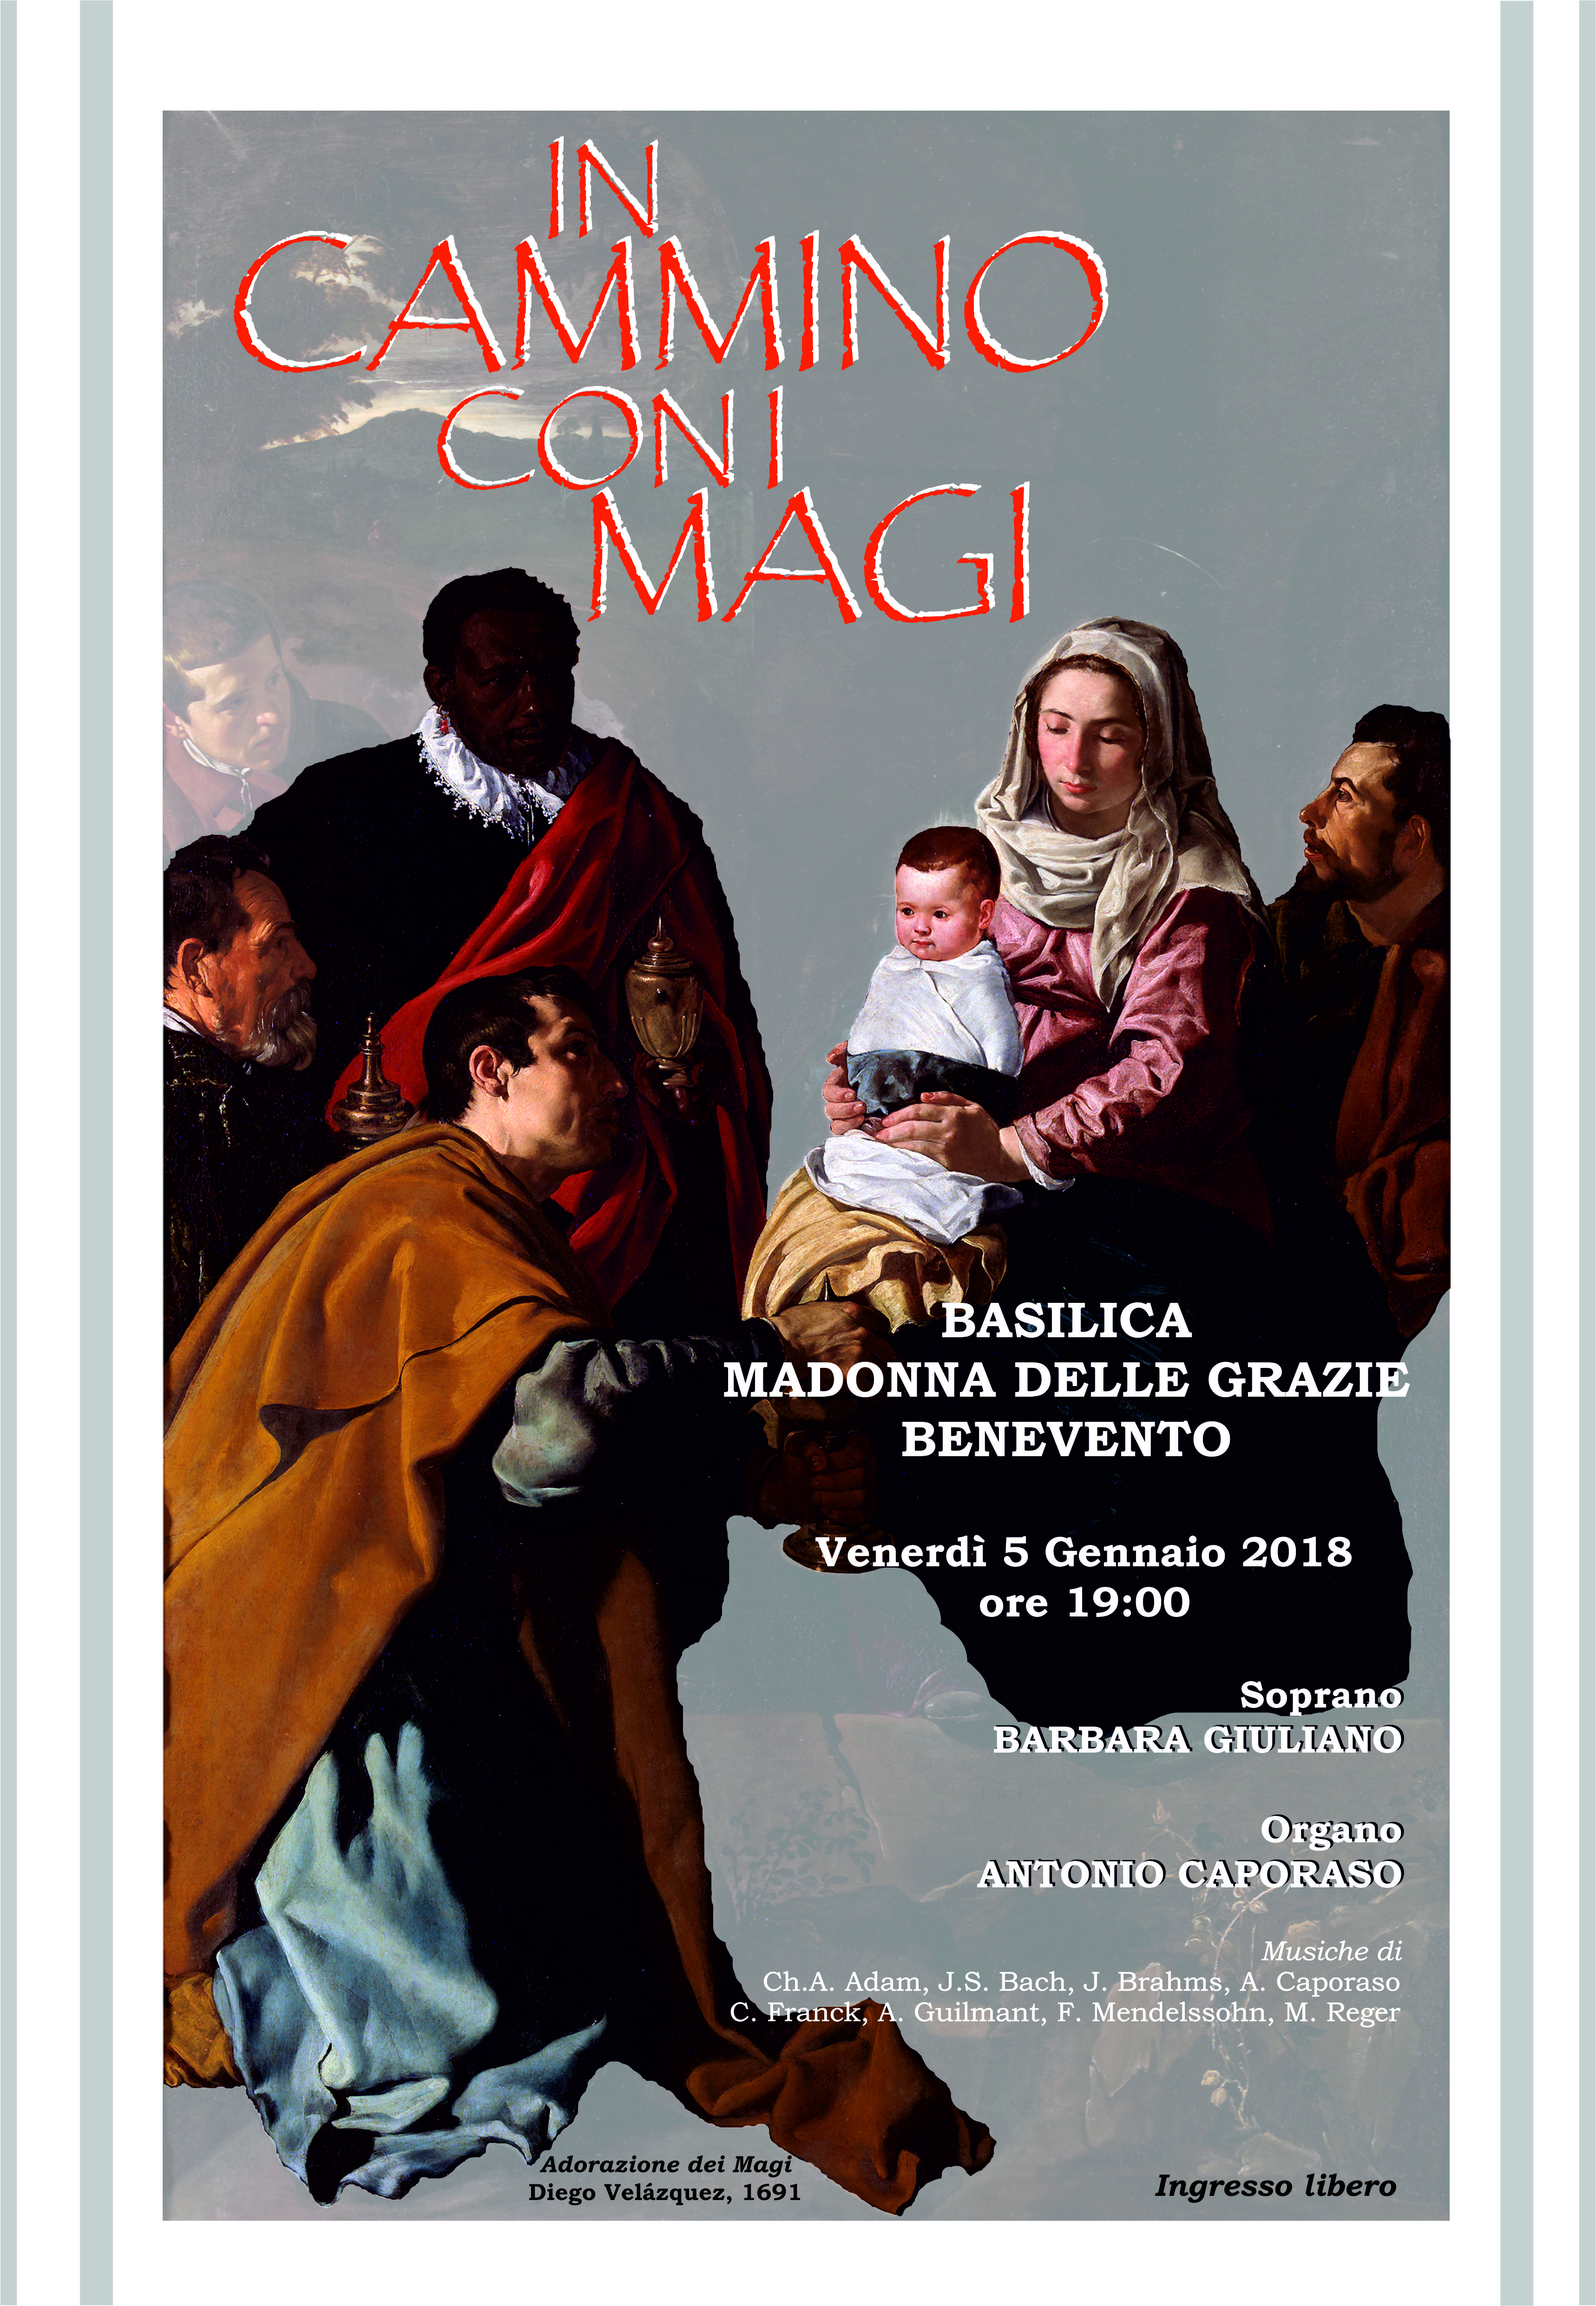 Benevento| Alla Madonna delle Grazie l’evento “In cammino con i Magi”